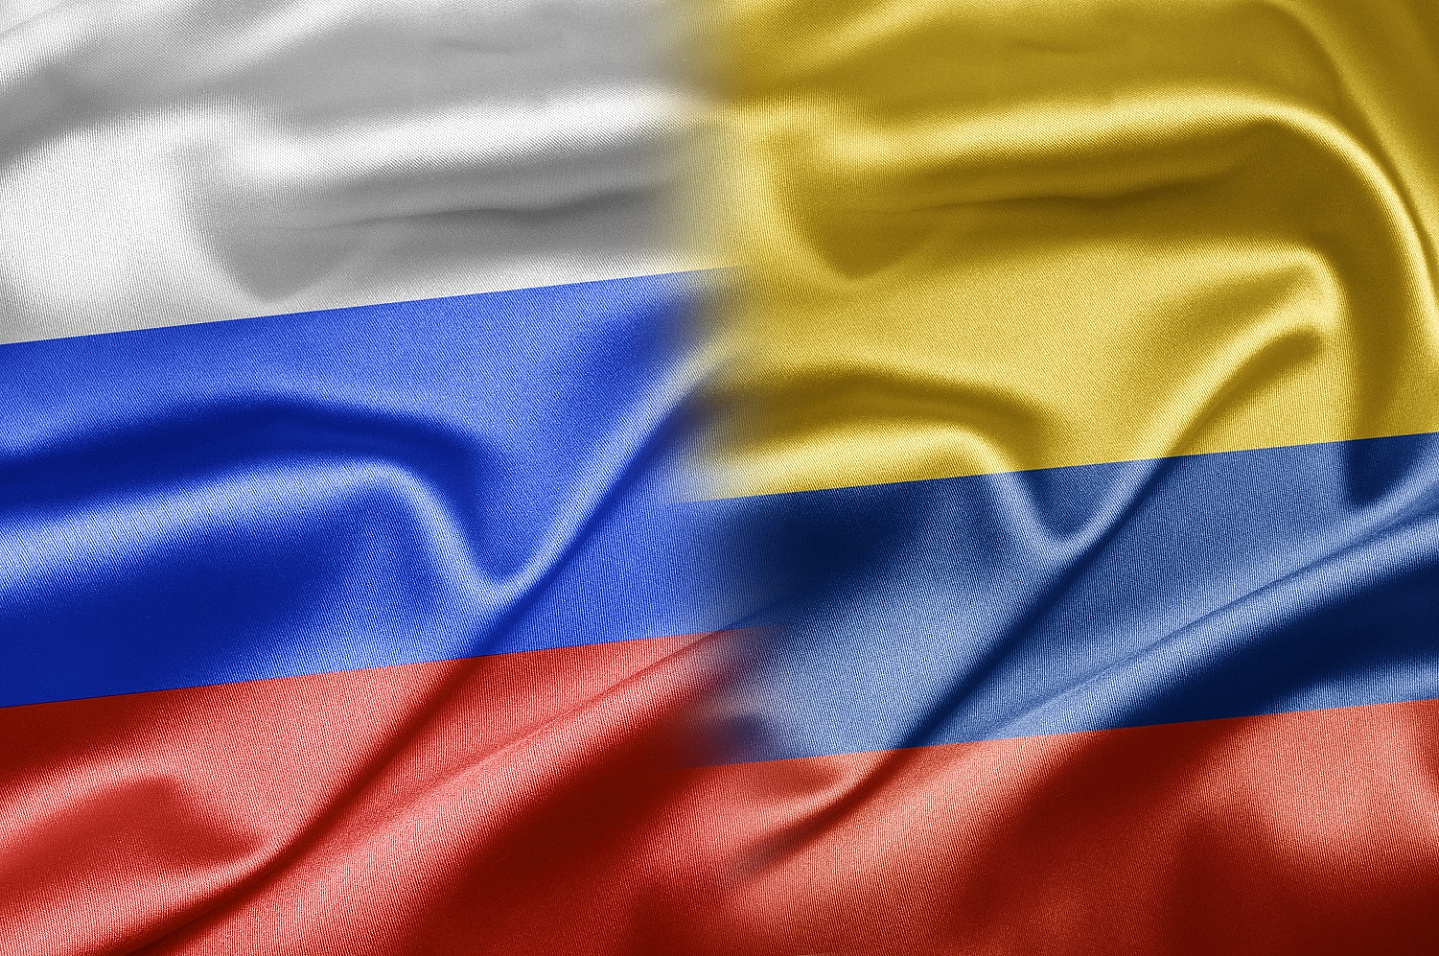 Фонд «Росконгресс» и Колумбийско-Российская торговая палата подписали соглашение о сотрудничестве